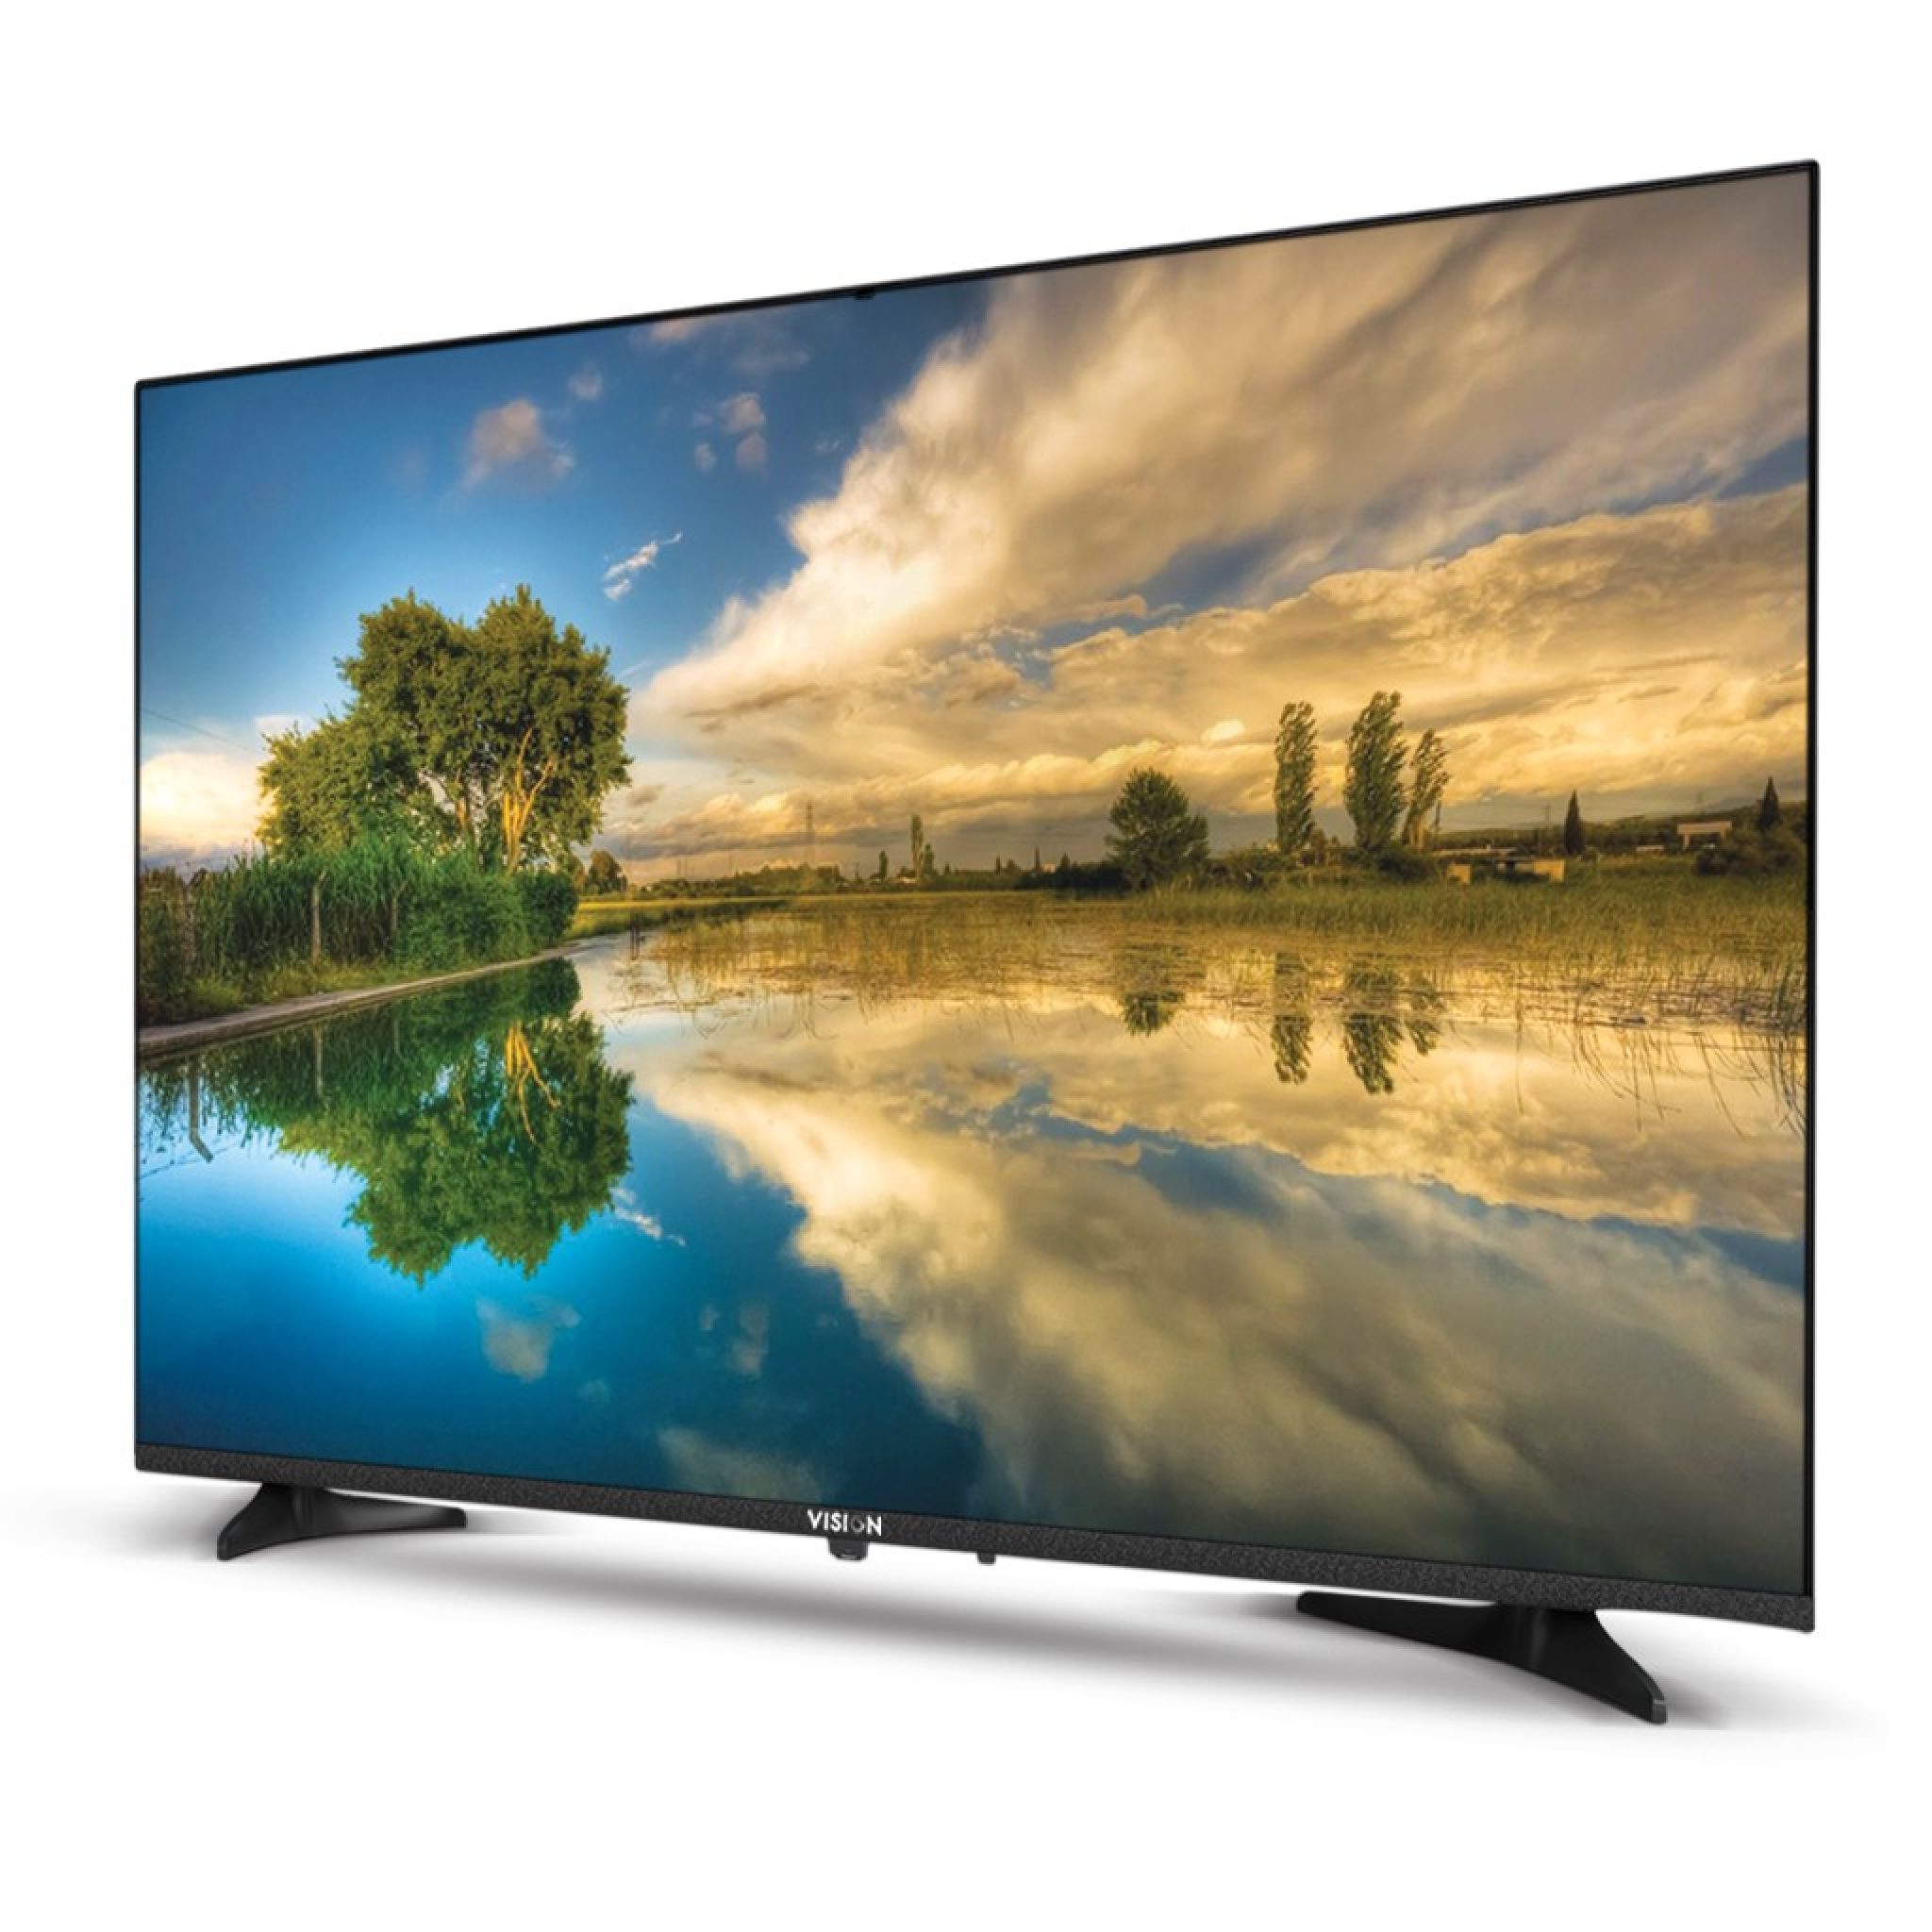 Телевизоры смарт купить дешево. Телевизор 32 дюйма смарт. Телевизор смарт 32 Артел. Samsung 32k6000.